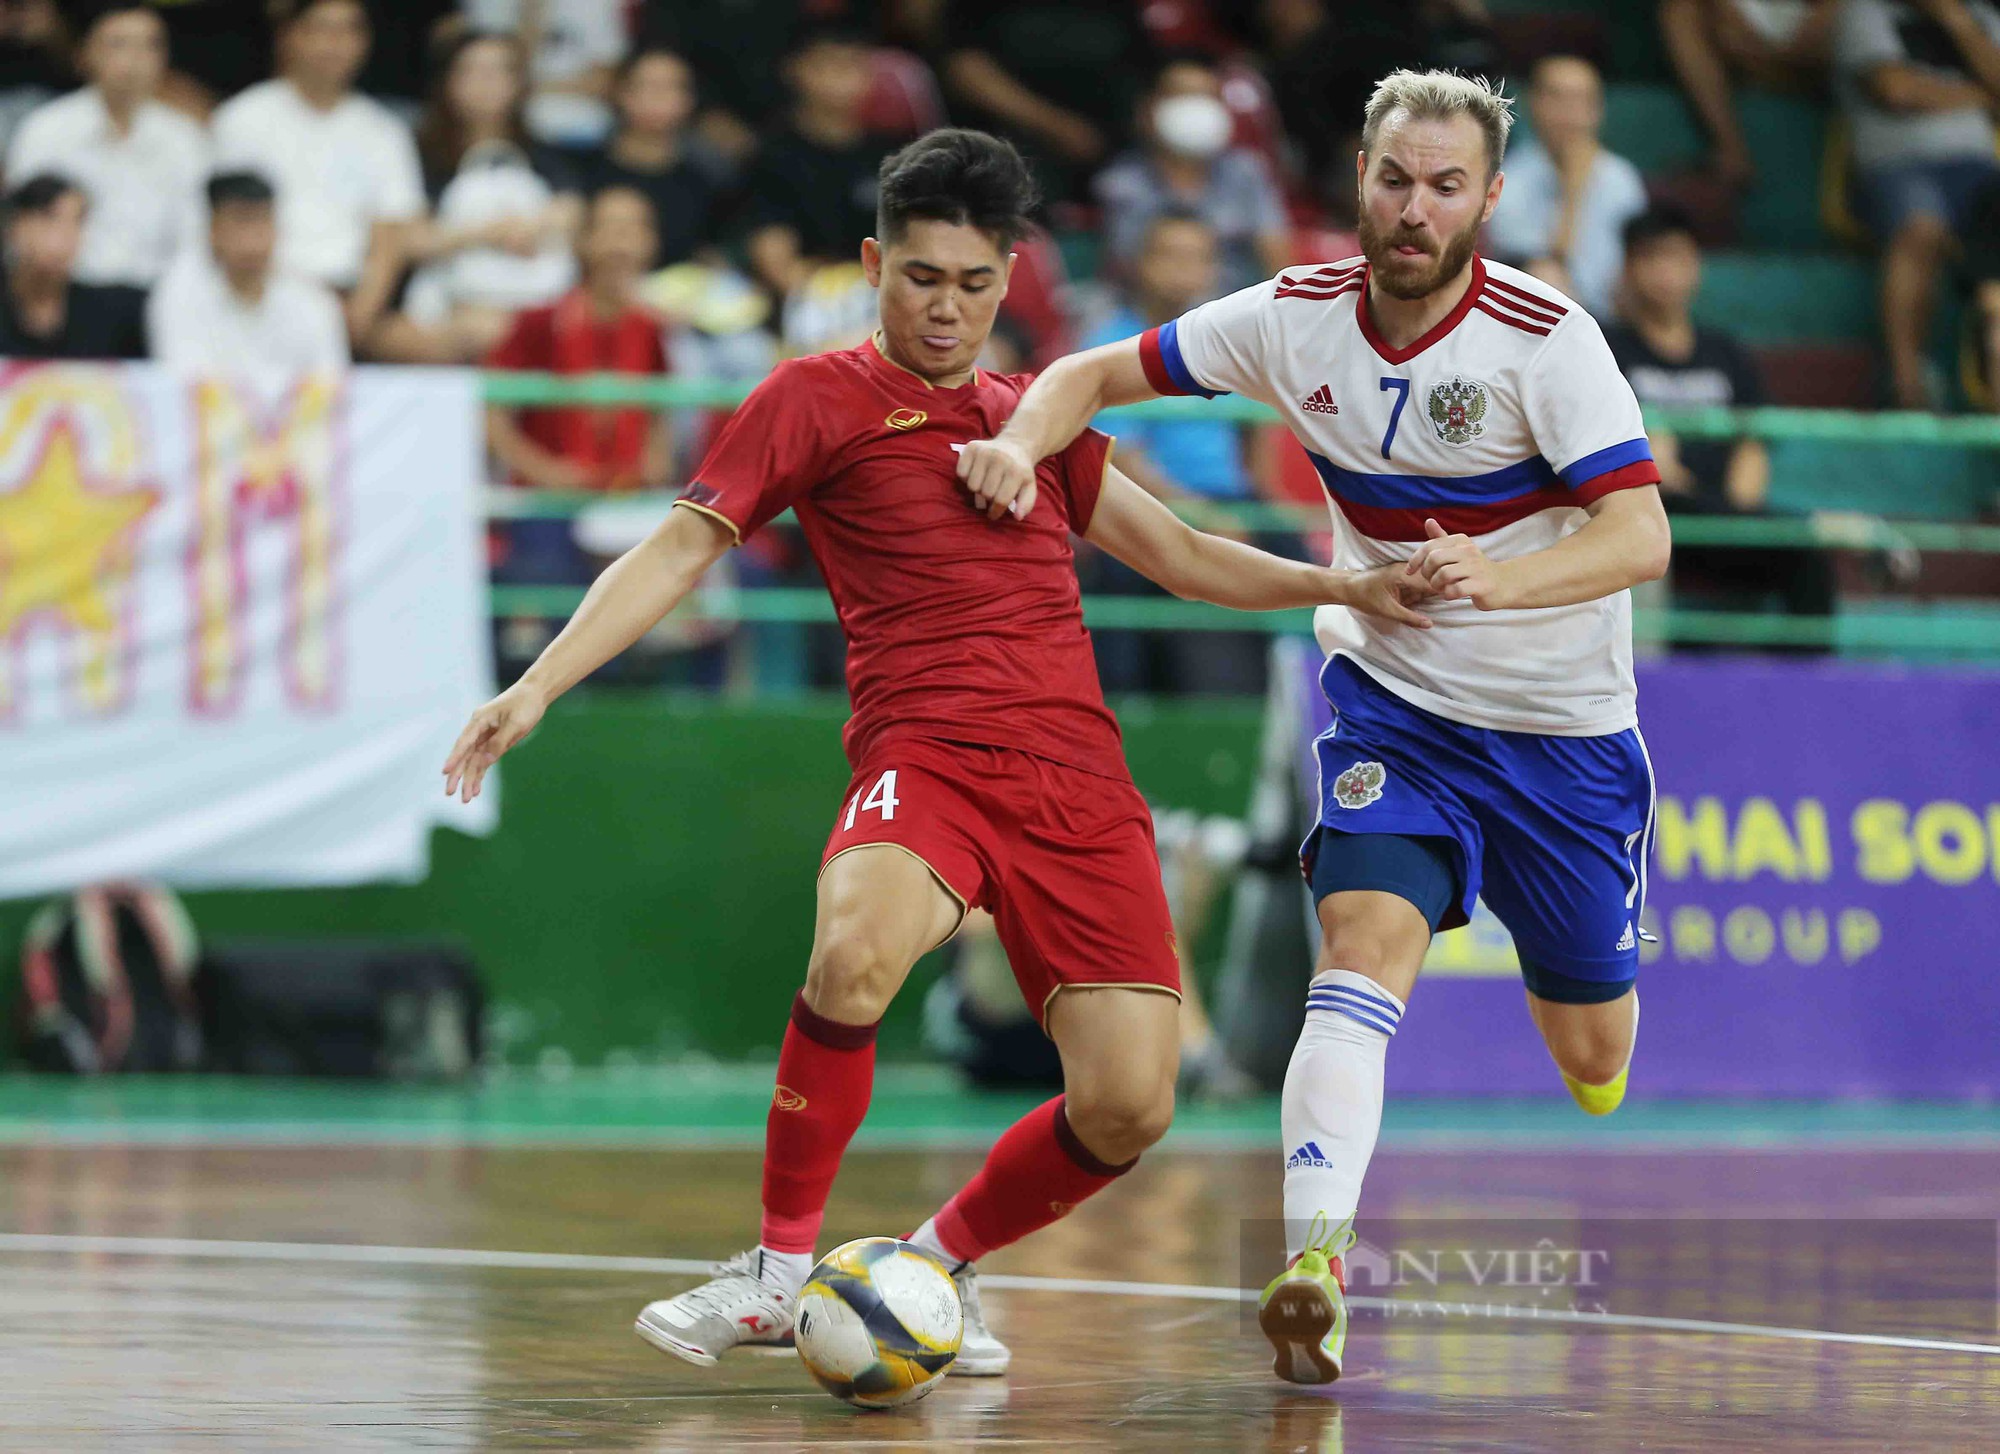 Tân đội trưởng ghi bàn phút cuối, futsal Việt Nam kịch tính cầm hoà đội hạng 4 thế giới - Ảnh 2.